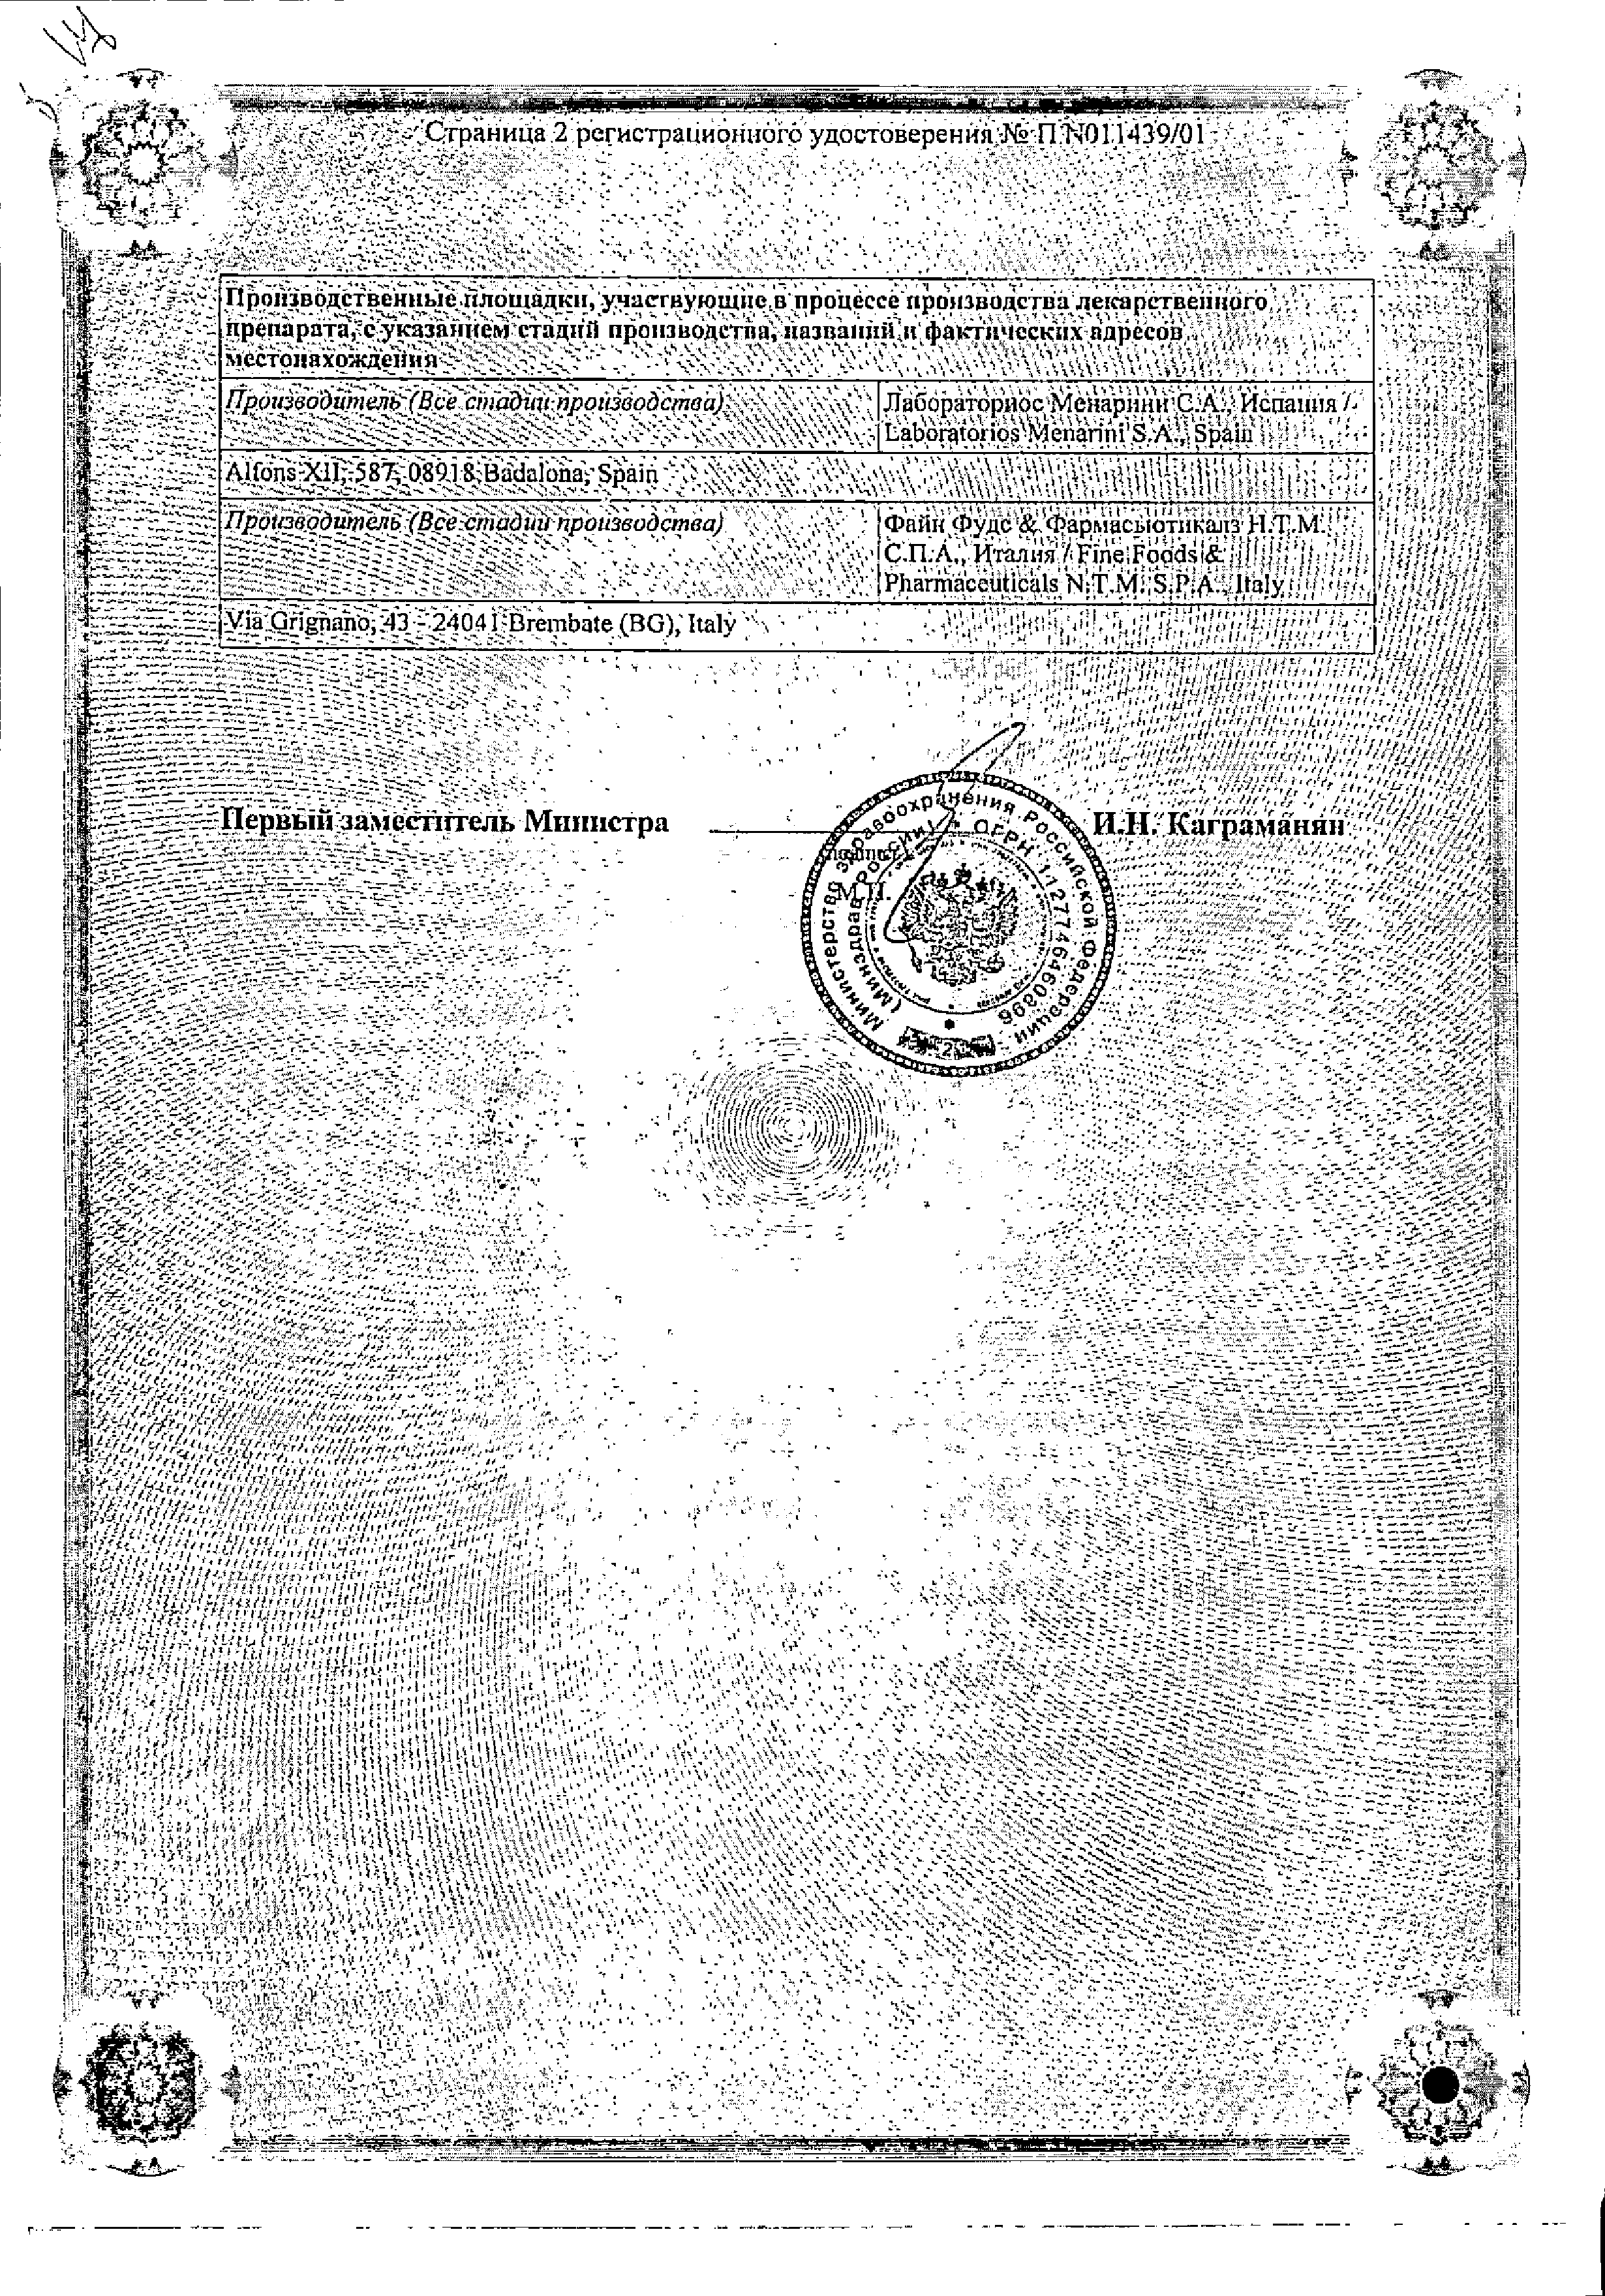 Нимесил сертификат